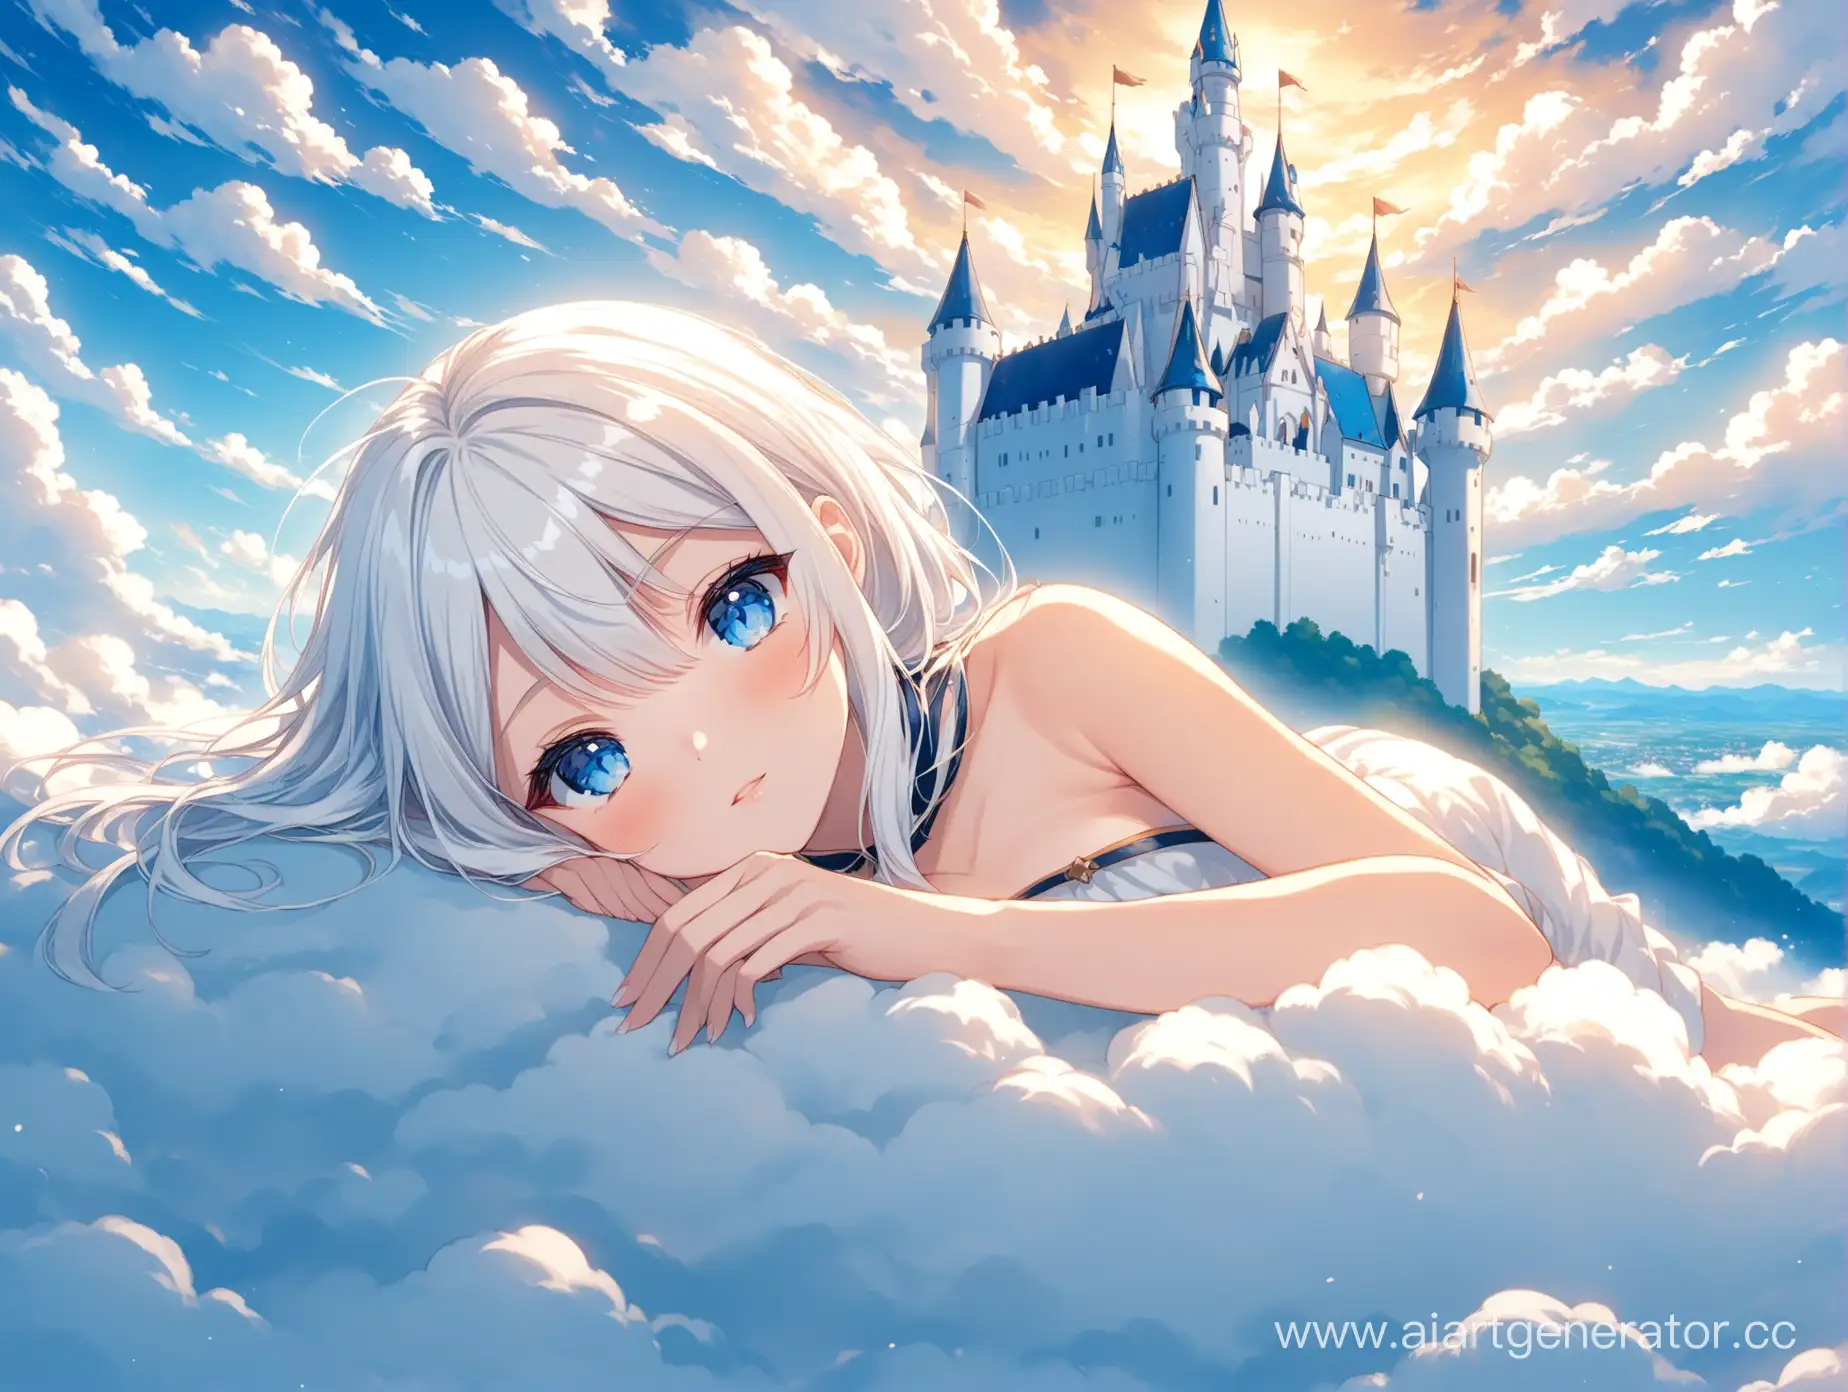 аниме девочка лежит, девочка с белыми волосами и синими глазами, девочка на фоне облаков, девочка в белом замке